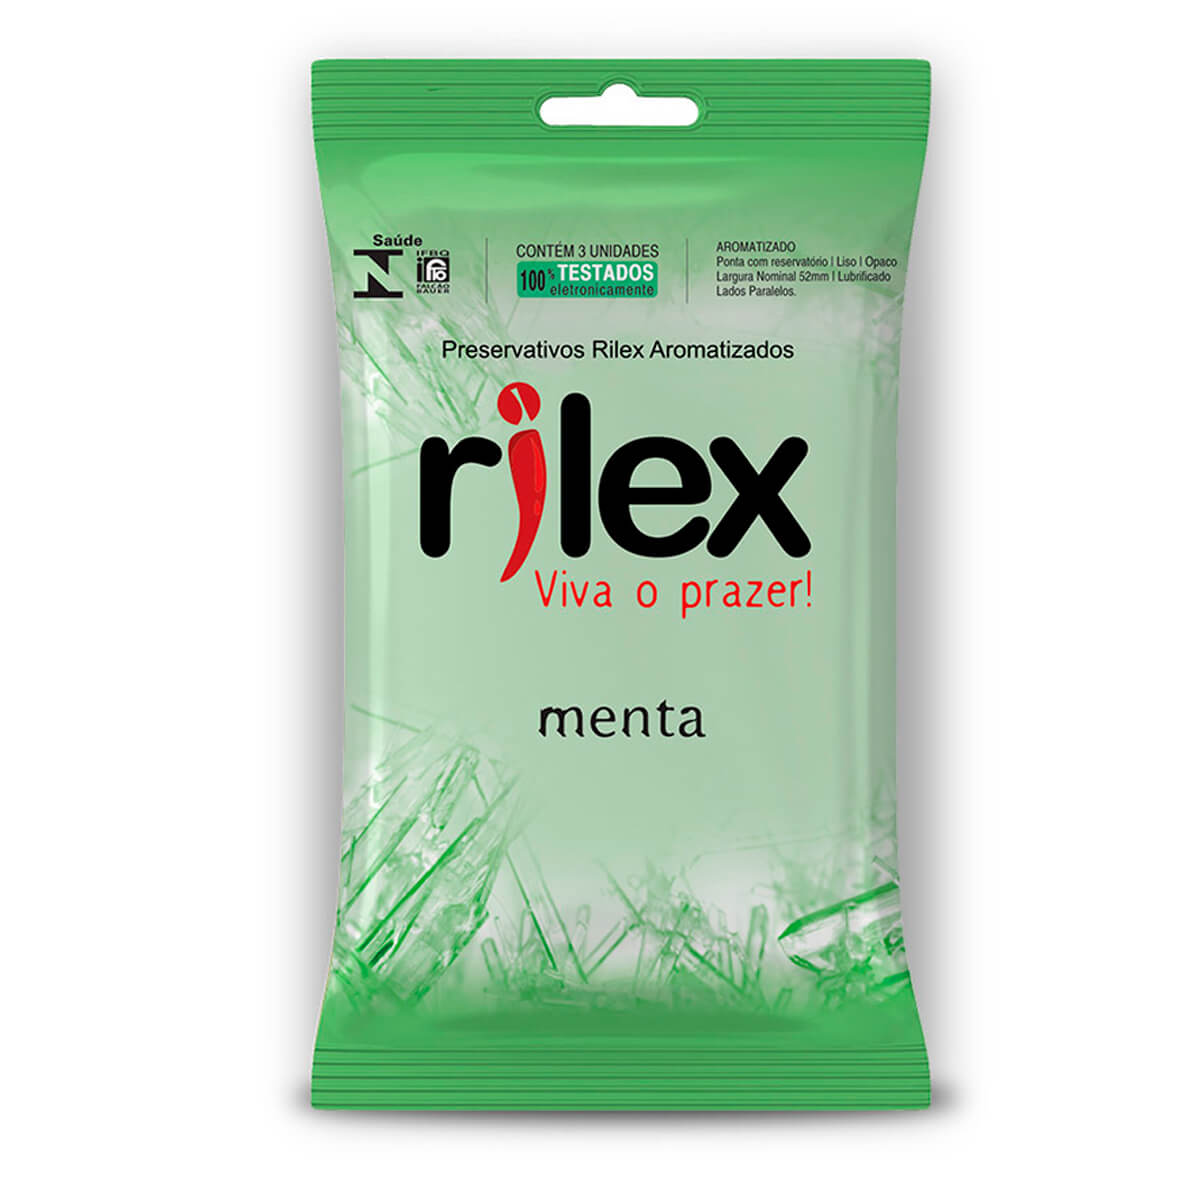 Preservativo Lubrificado com Aroma de Menta 3 Unidades Rilex